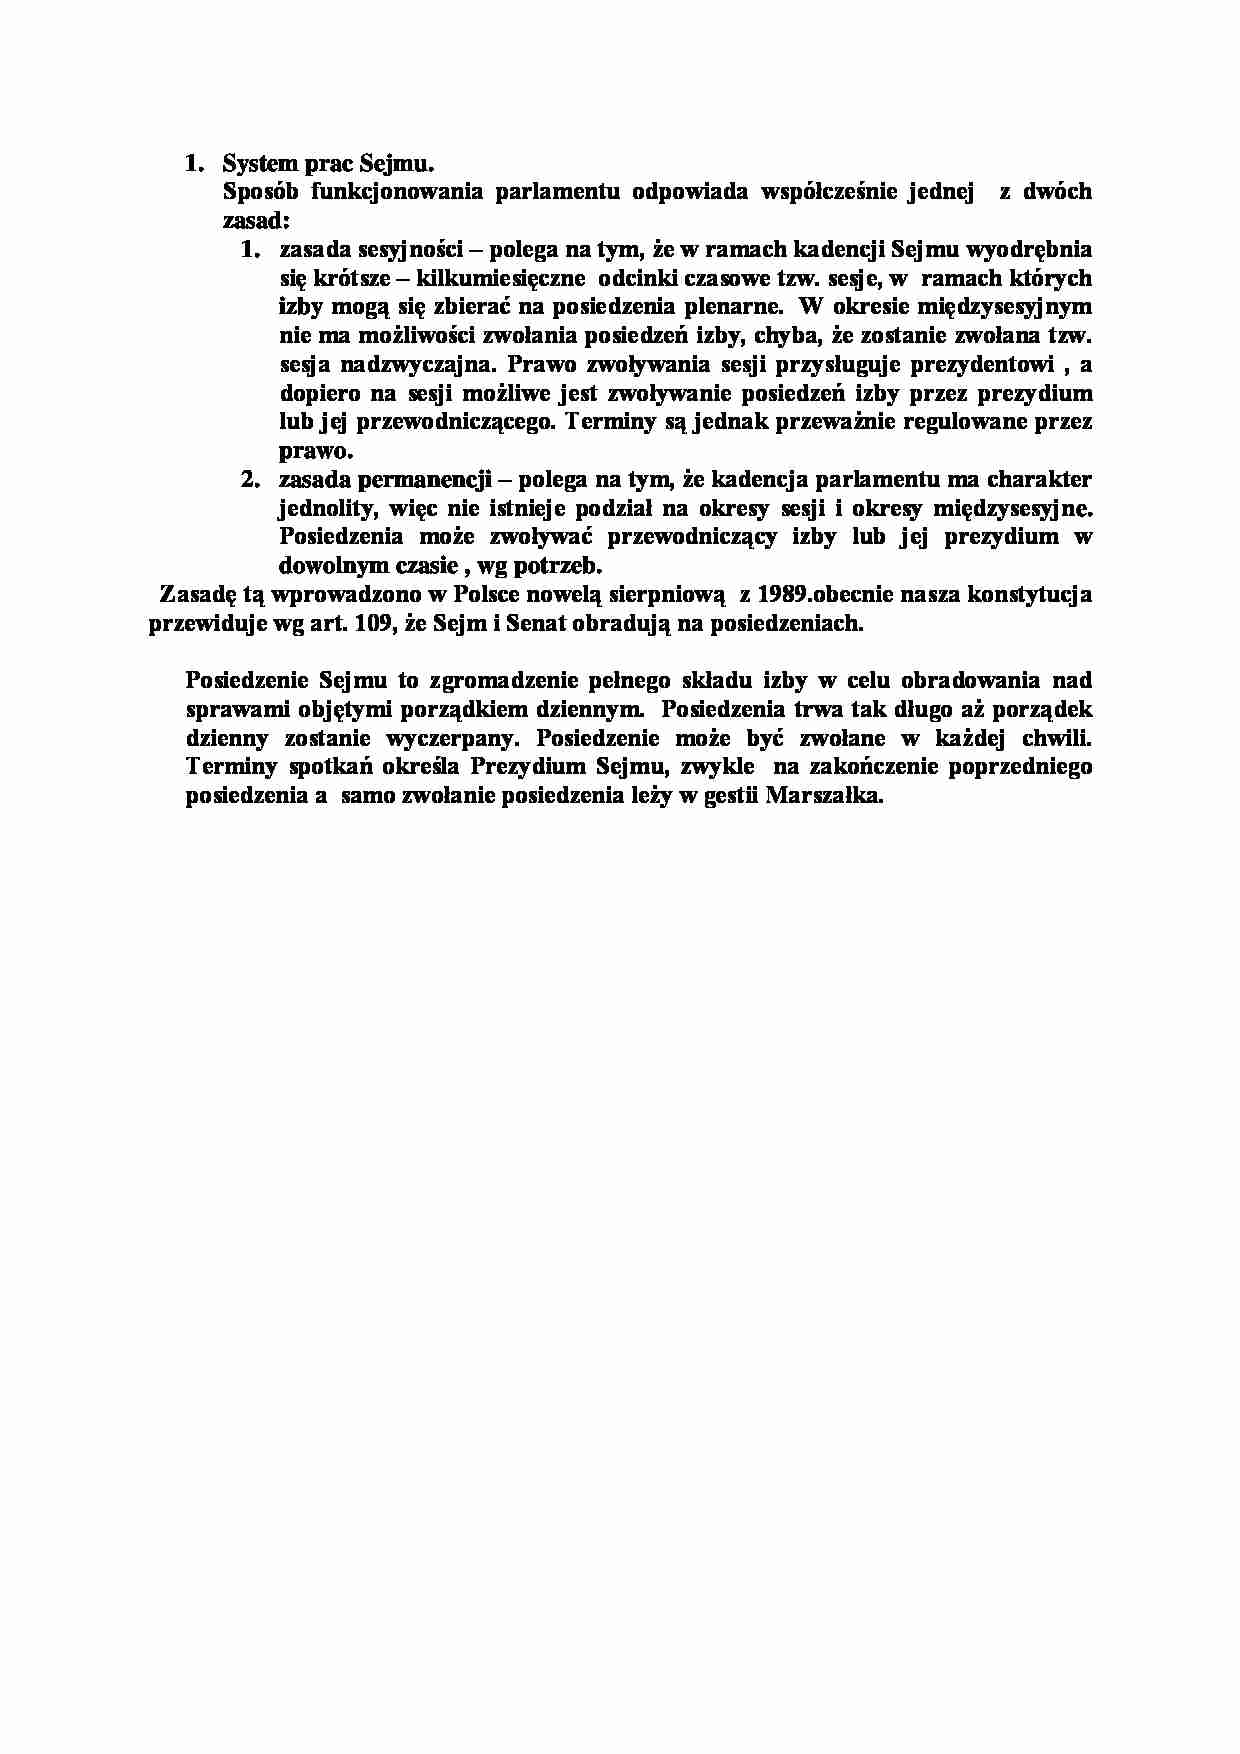 System prac Sejmu-opracowanie - strona 1